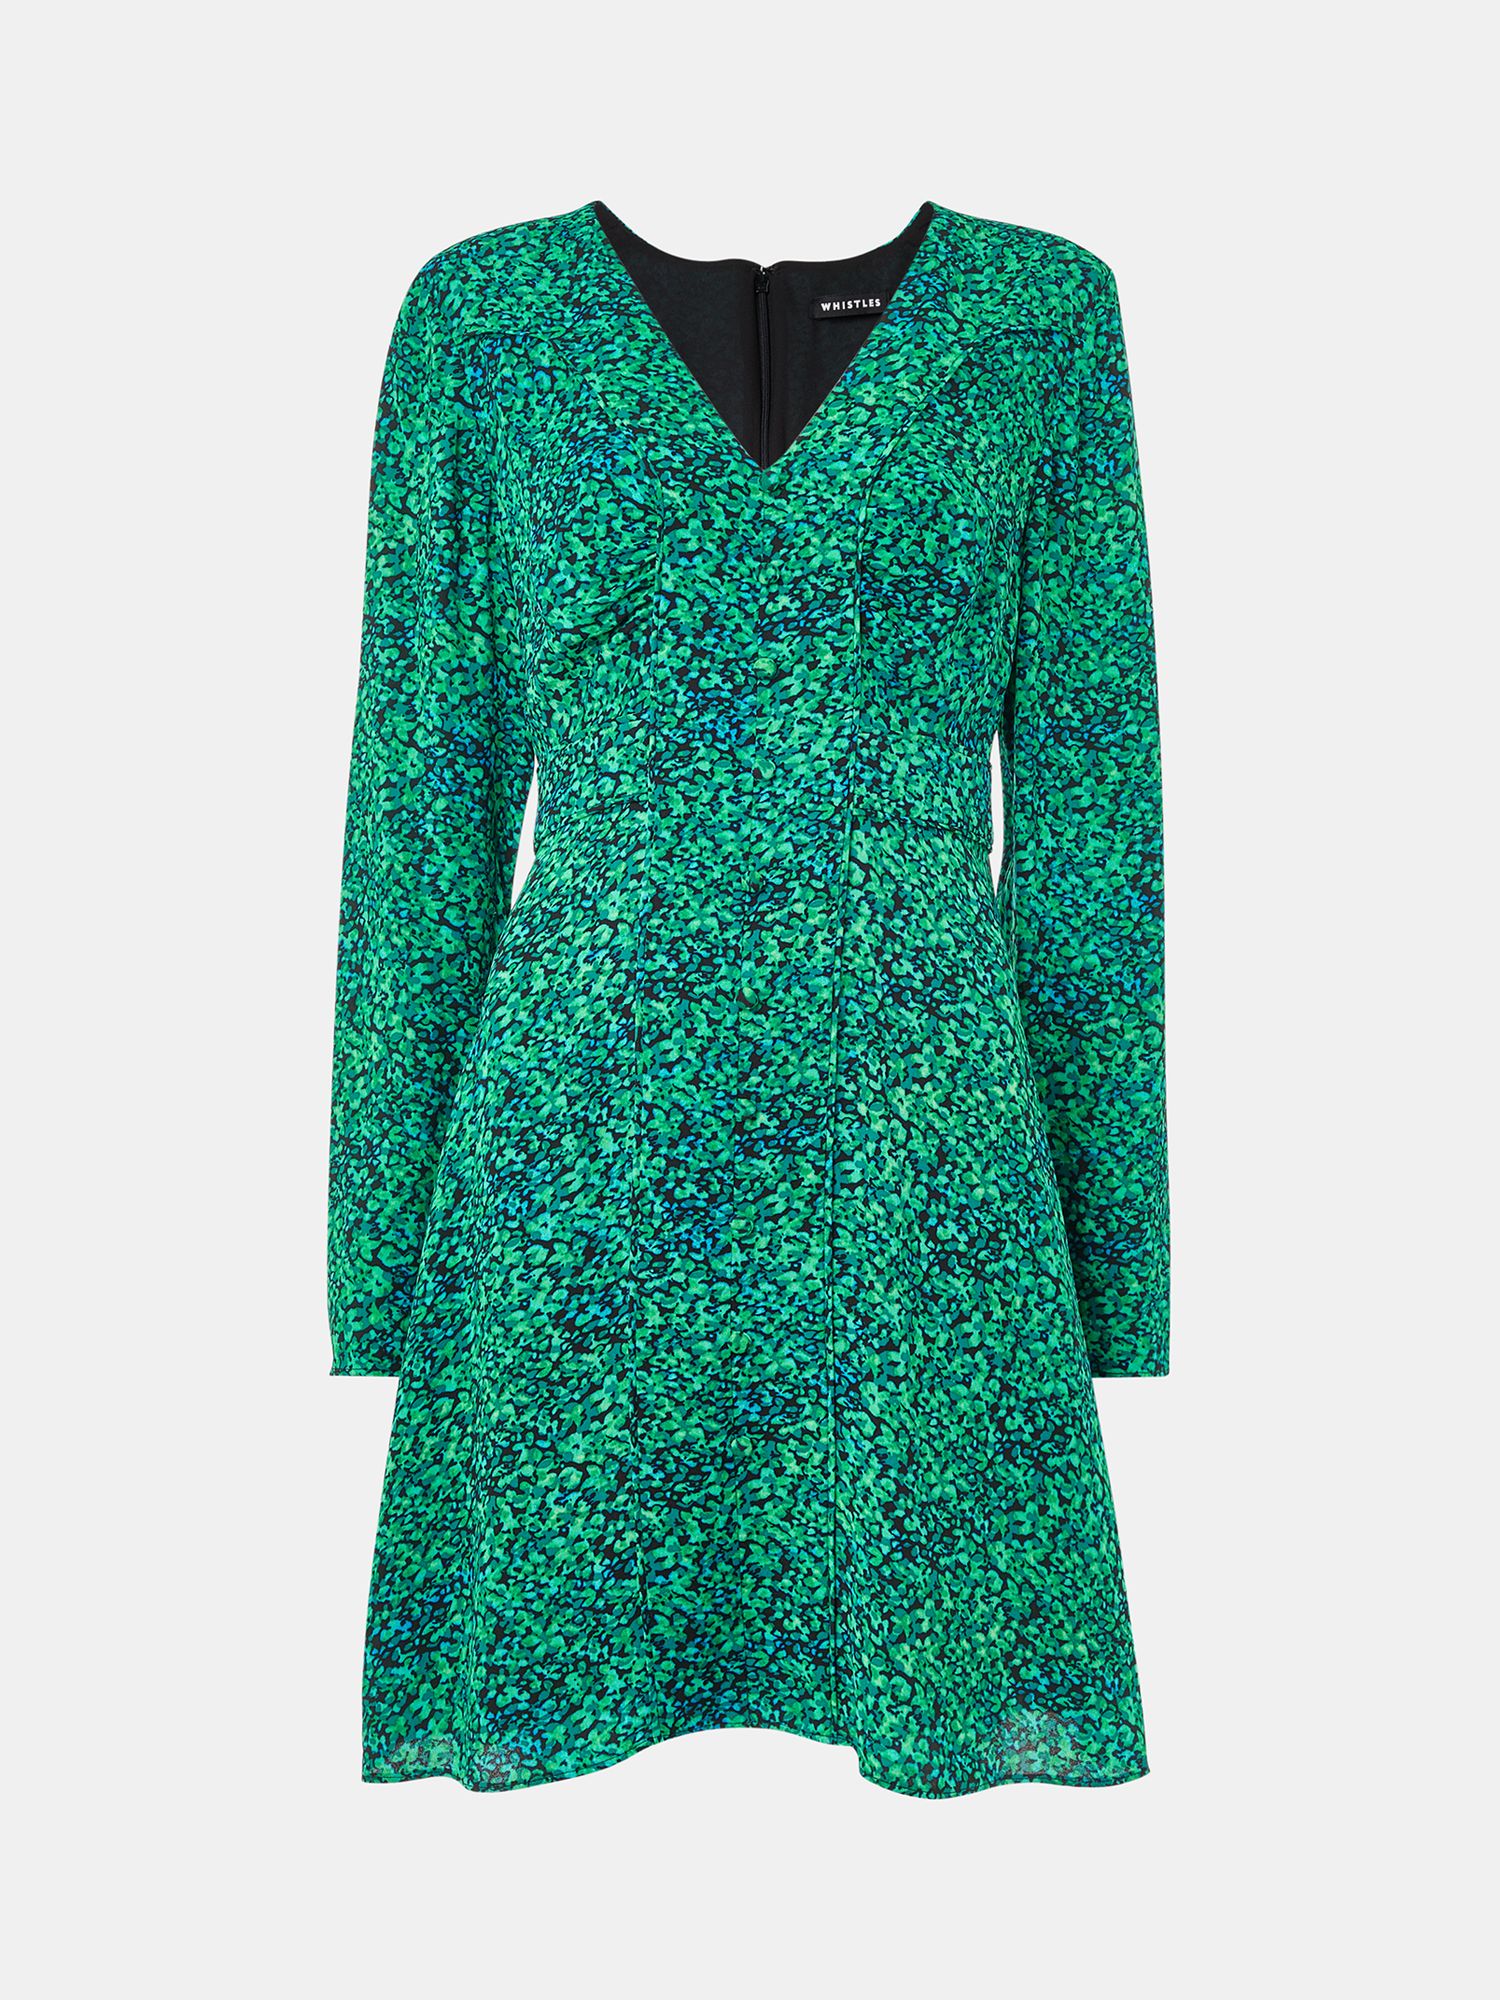 Whistles Petite Lori Dappled Floral Mini Dress, Green/Multi, 16